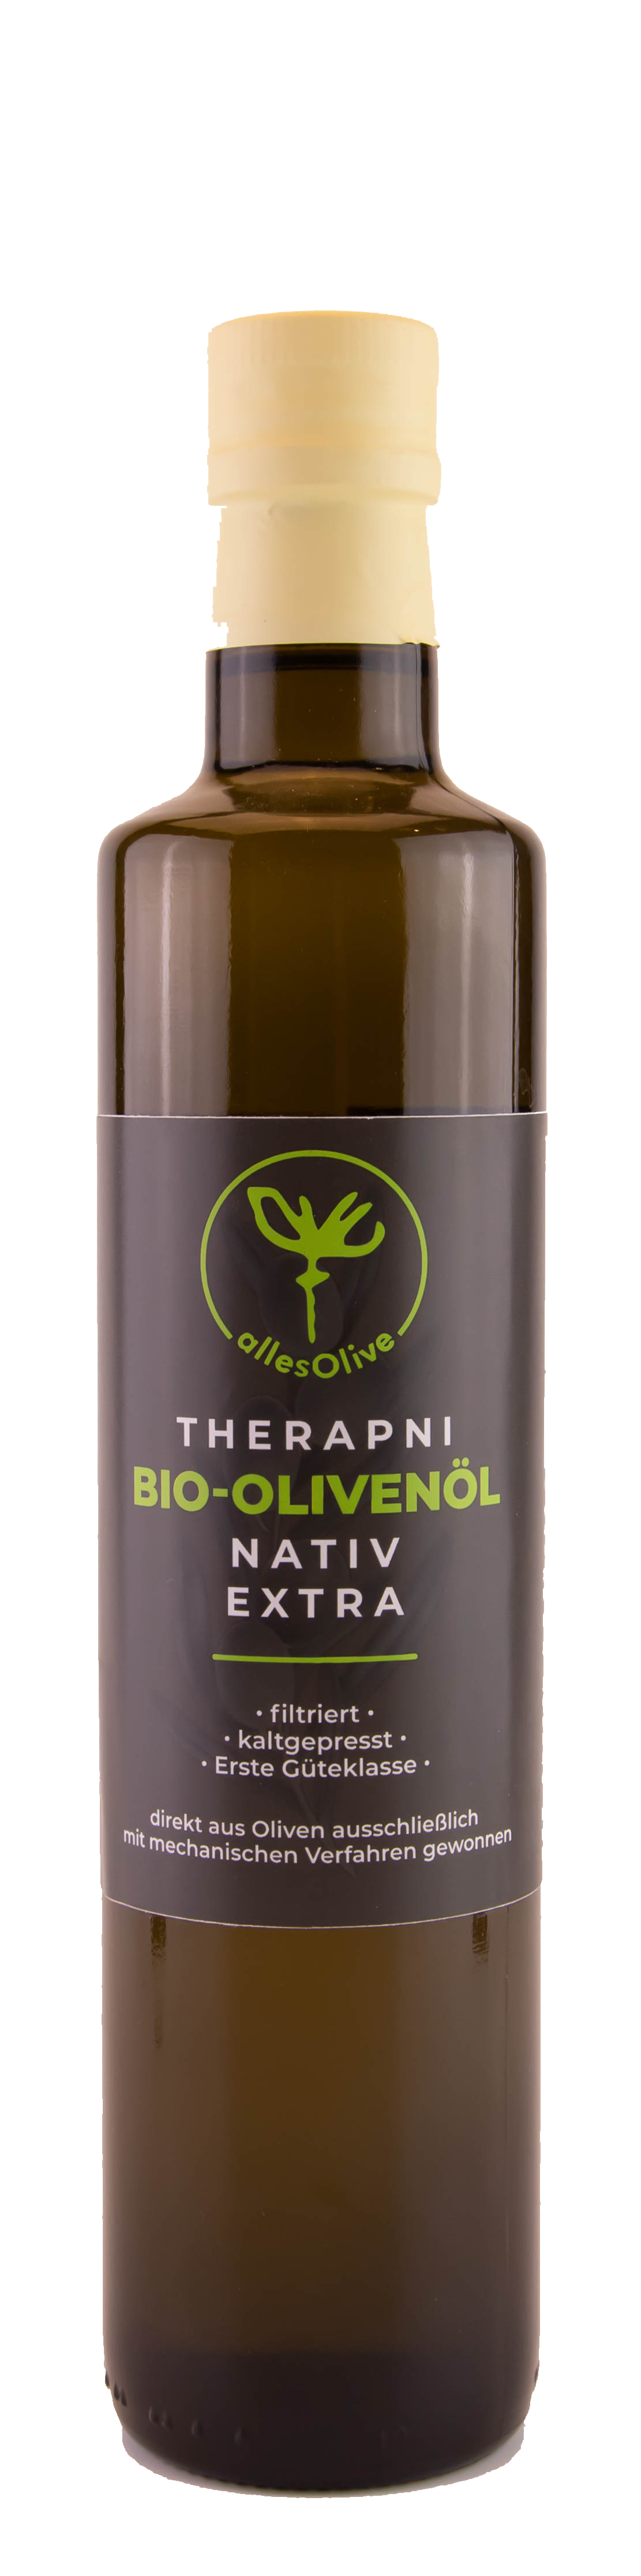 THERAPNI Huile d'olive extra vierge biologique native, filtrée, bouteille de 500 ml.